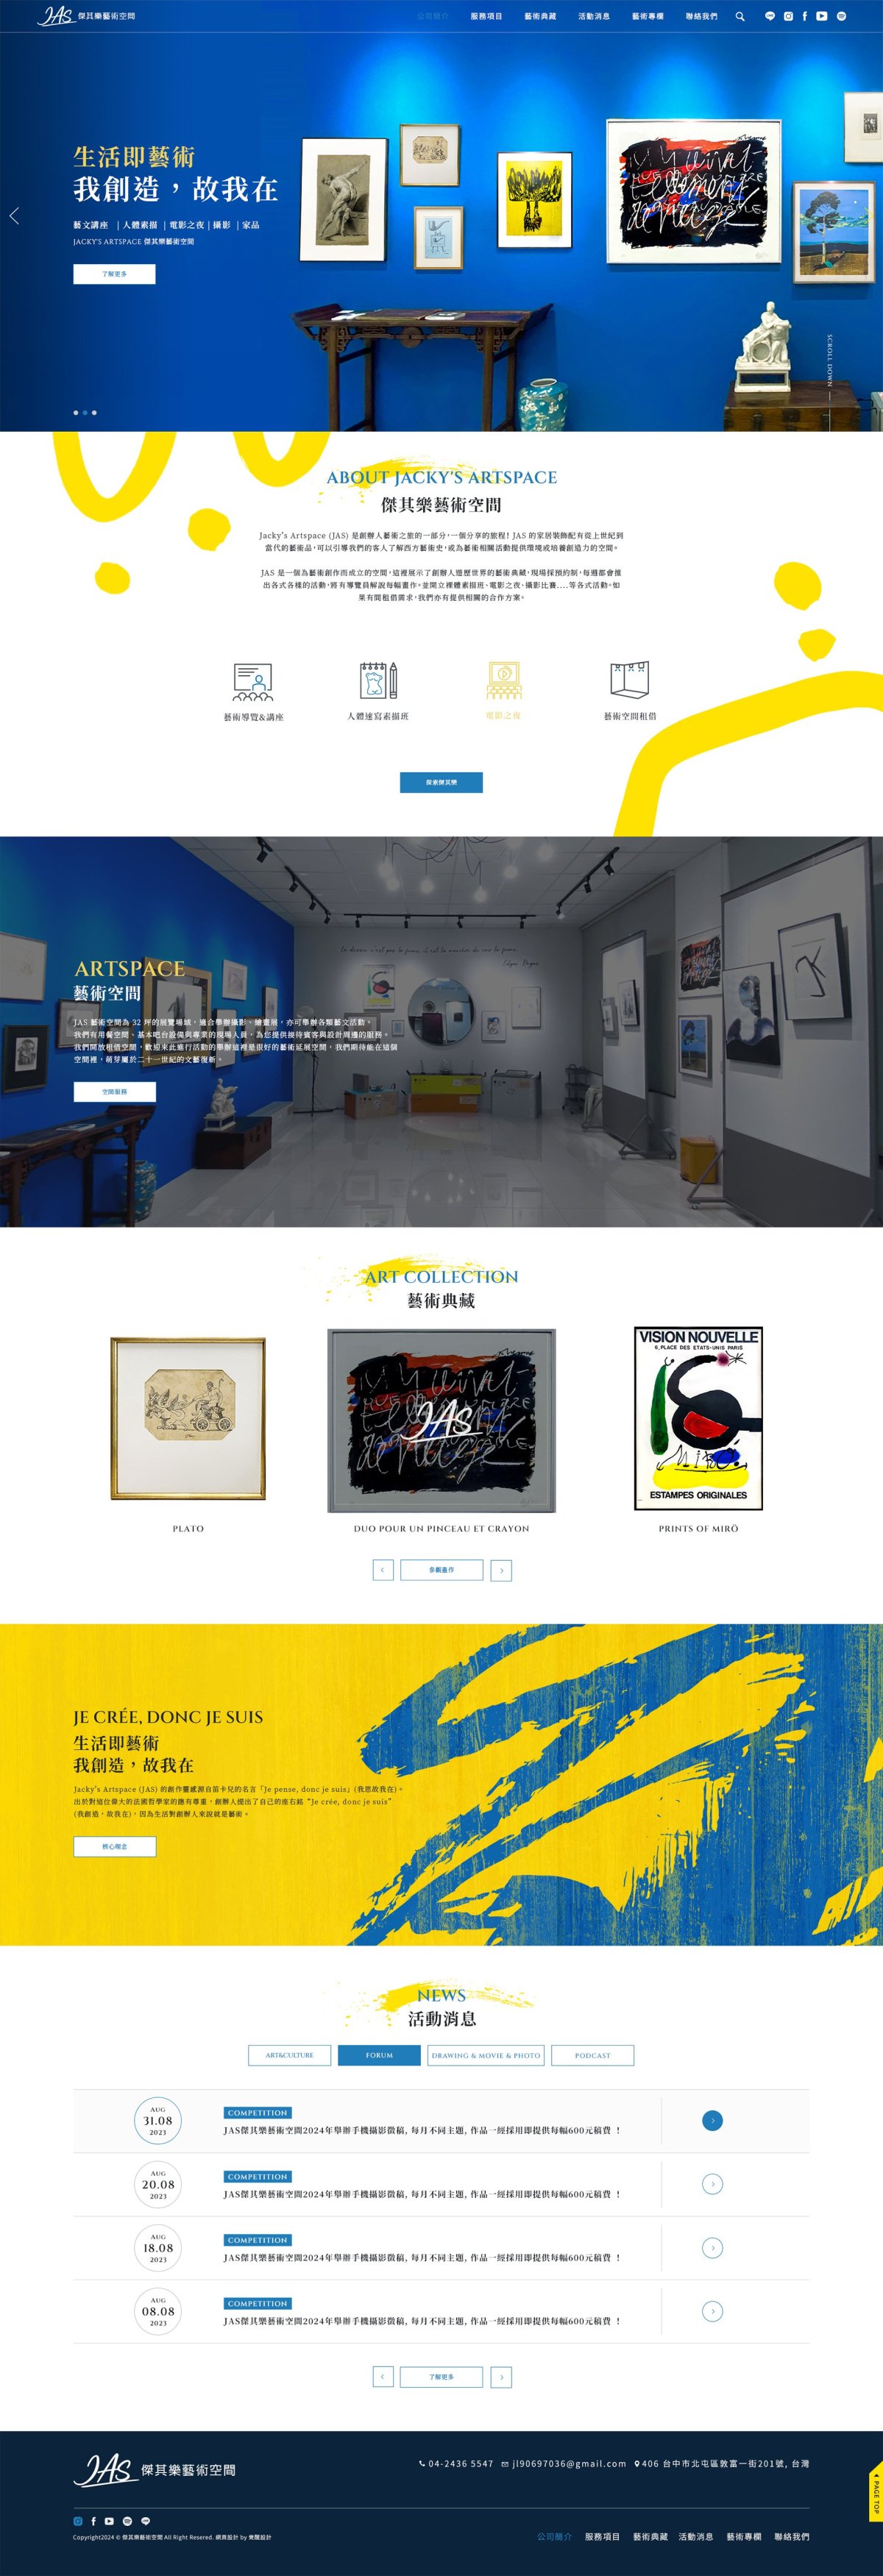 傑其樂藝術空間-首頁網站客製化設計-覺醒網頁計服務